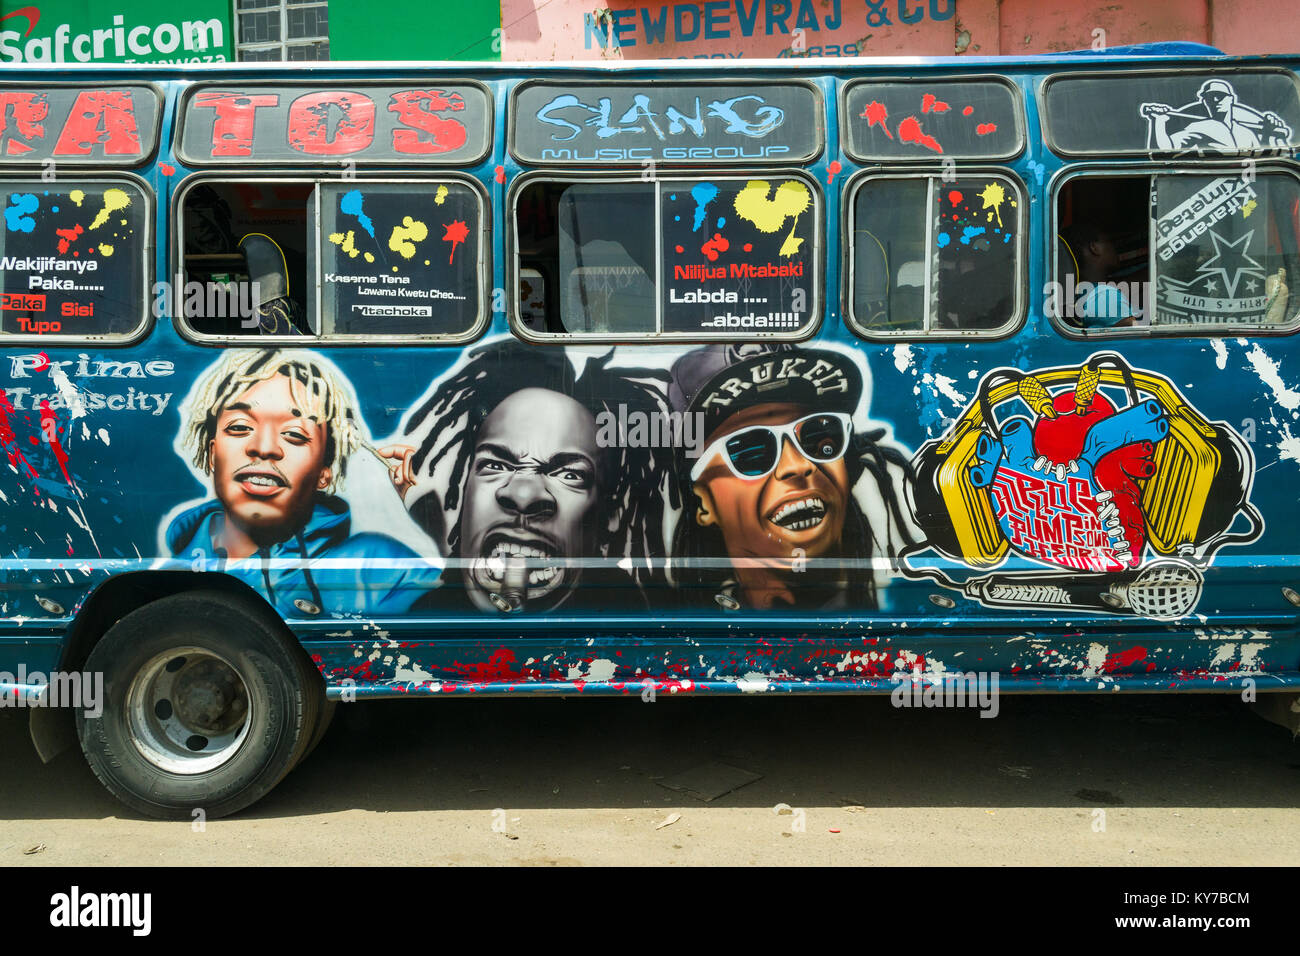 Un bus aux couleurs vives avec des illustrations attend sur le bord de la route avec les passagers à l'intérieur, Nairobi, Kenya, Afrique de l'Est Banque D'Images